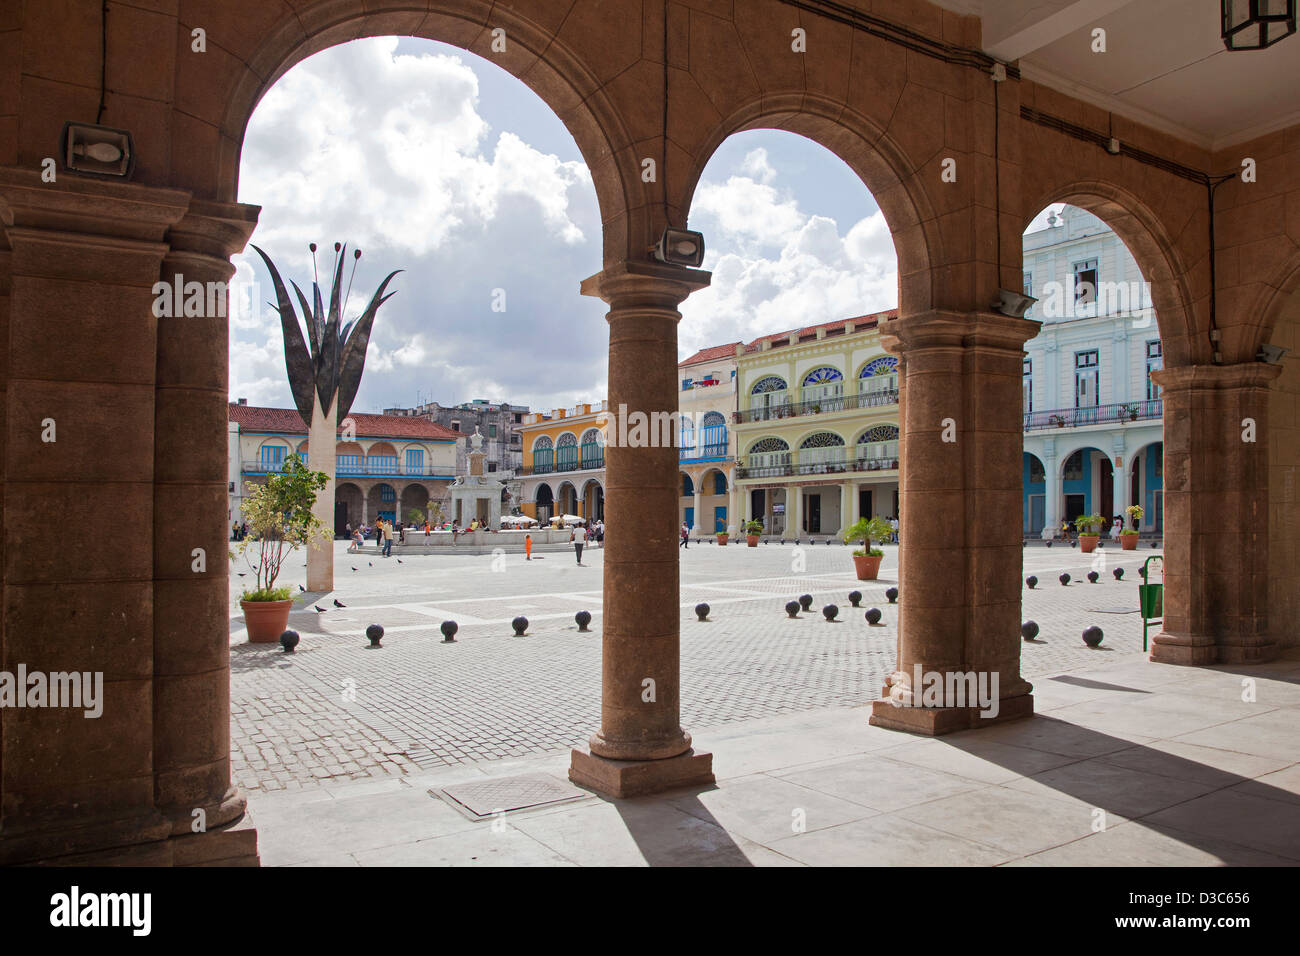 Bâtiments coloniaux le long de la place vieille / Plaza Vieja dans la vieille Havane / La Habana Vieja, Cuba, Caraïbes Banque D'Images